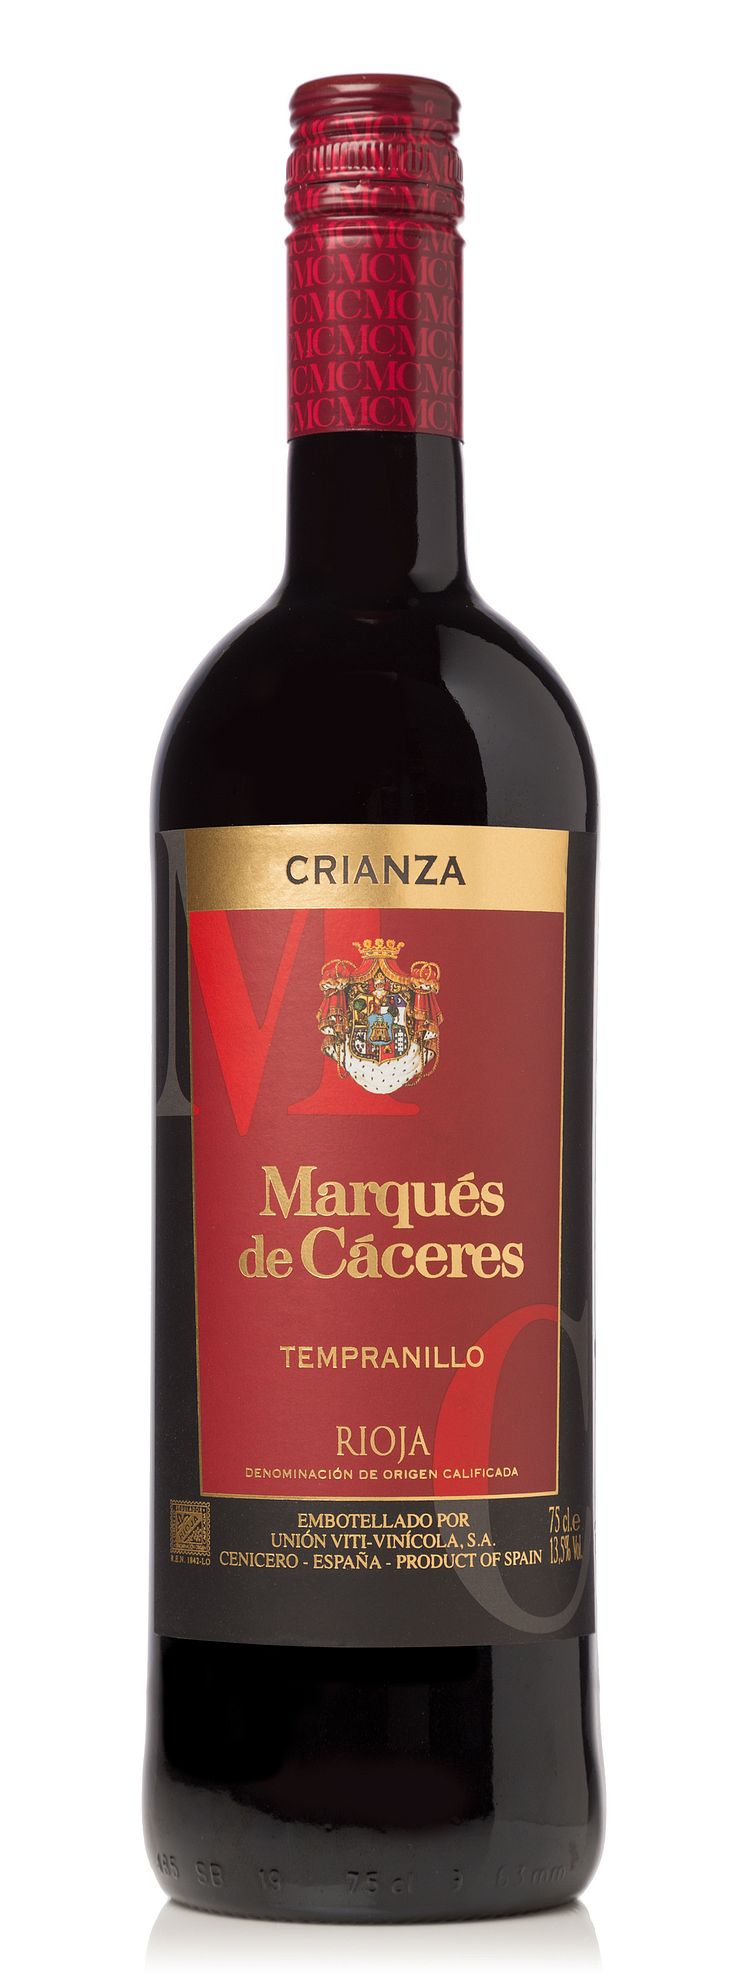 Marqués de Cáceres Crinaza, artnr 2734